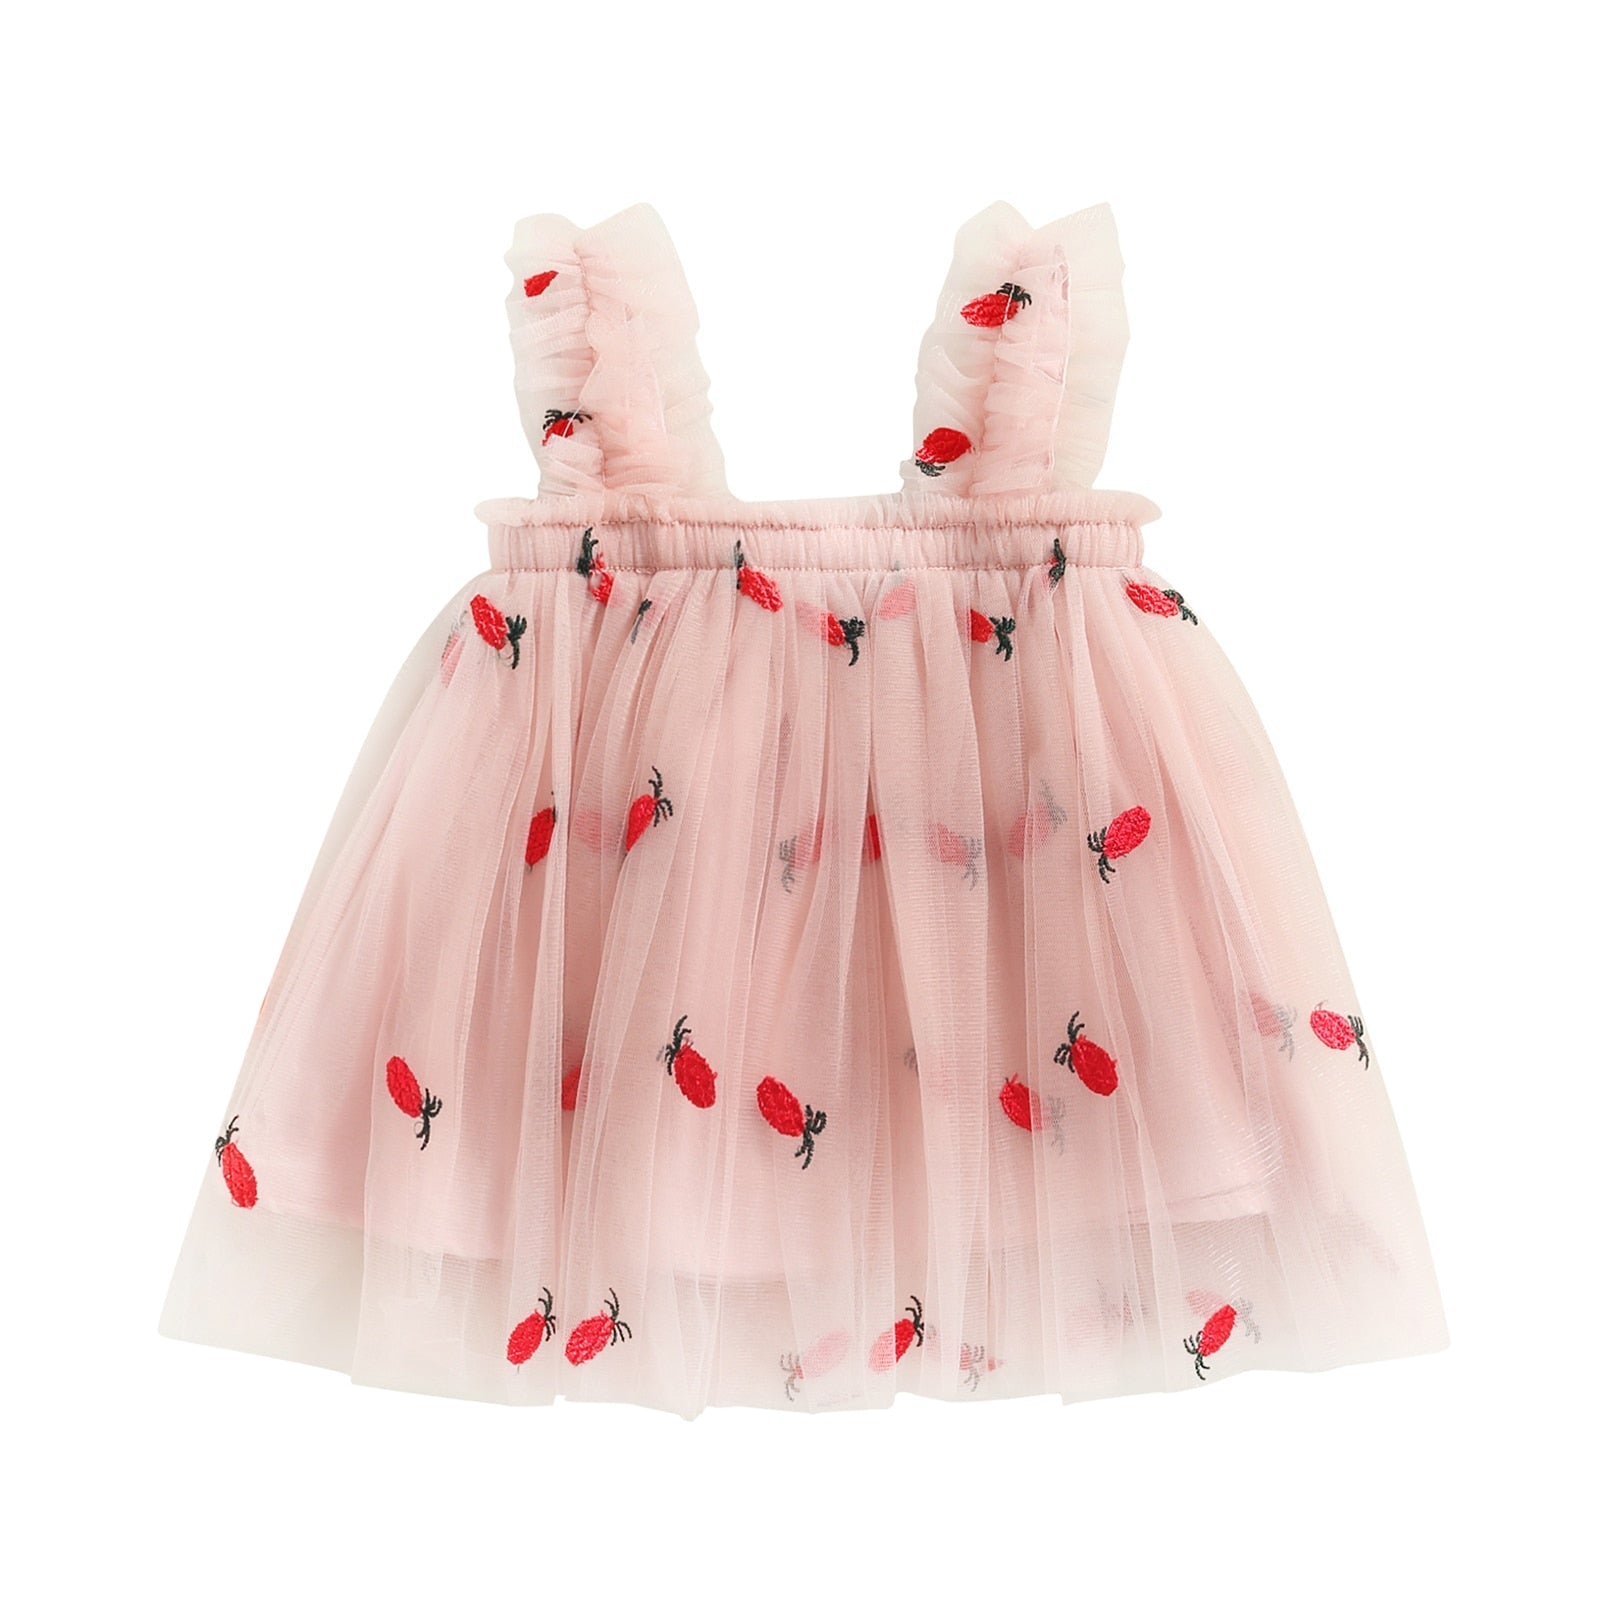 Vestido Infantil Tule Estampas vestido Loja Click Certo Abacaxi Rosa 2-3 anos 48cm 